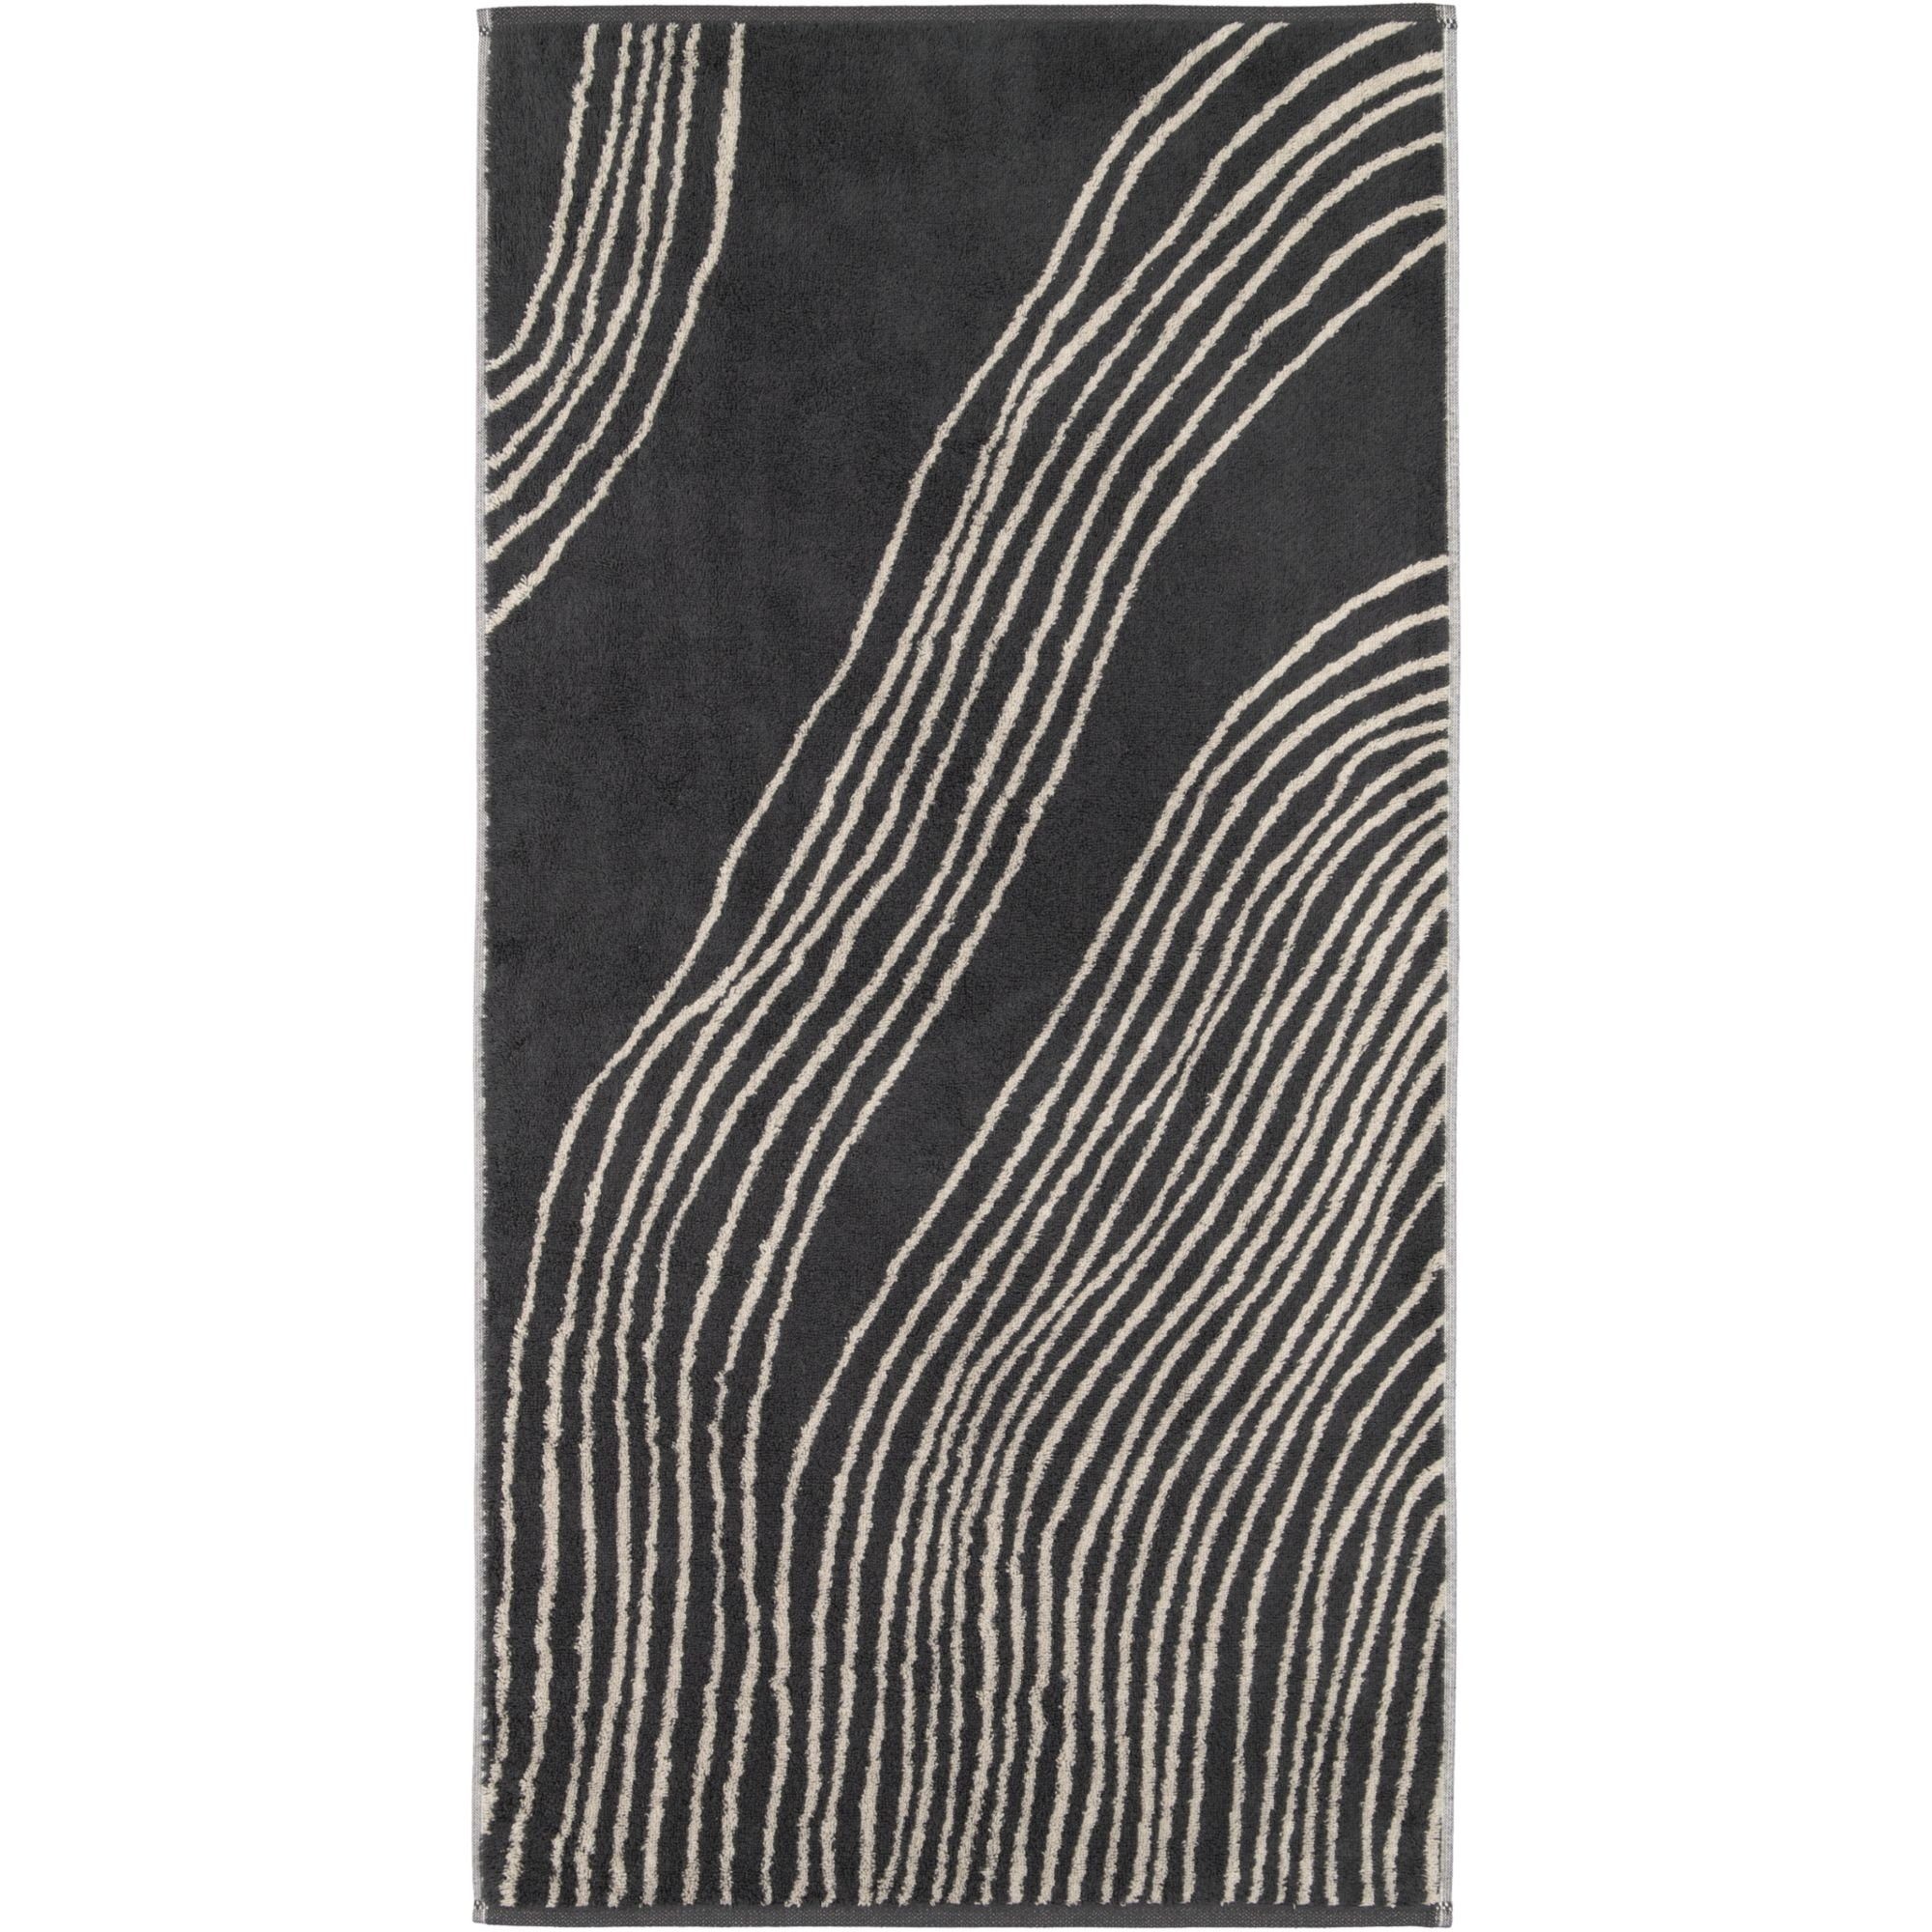 Cawö Handtücher Cawö Handtuch oder Duschtuch Gallery Flow 6210-73 granit, Baumwolle, 100% Baumwolle